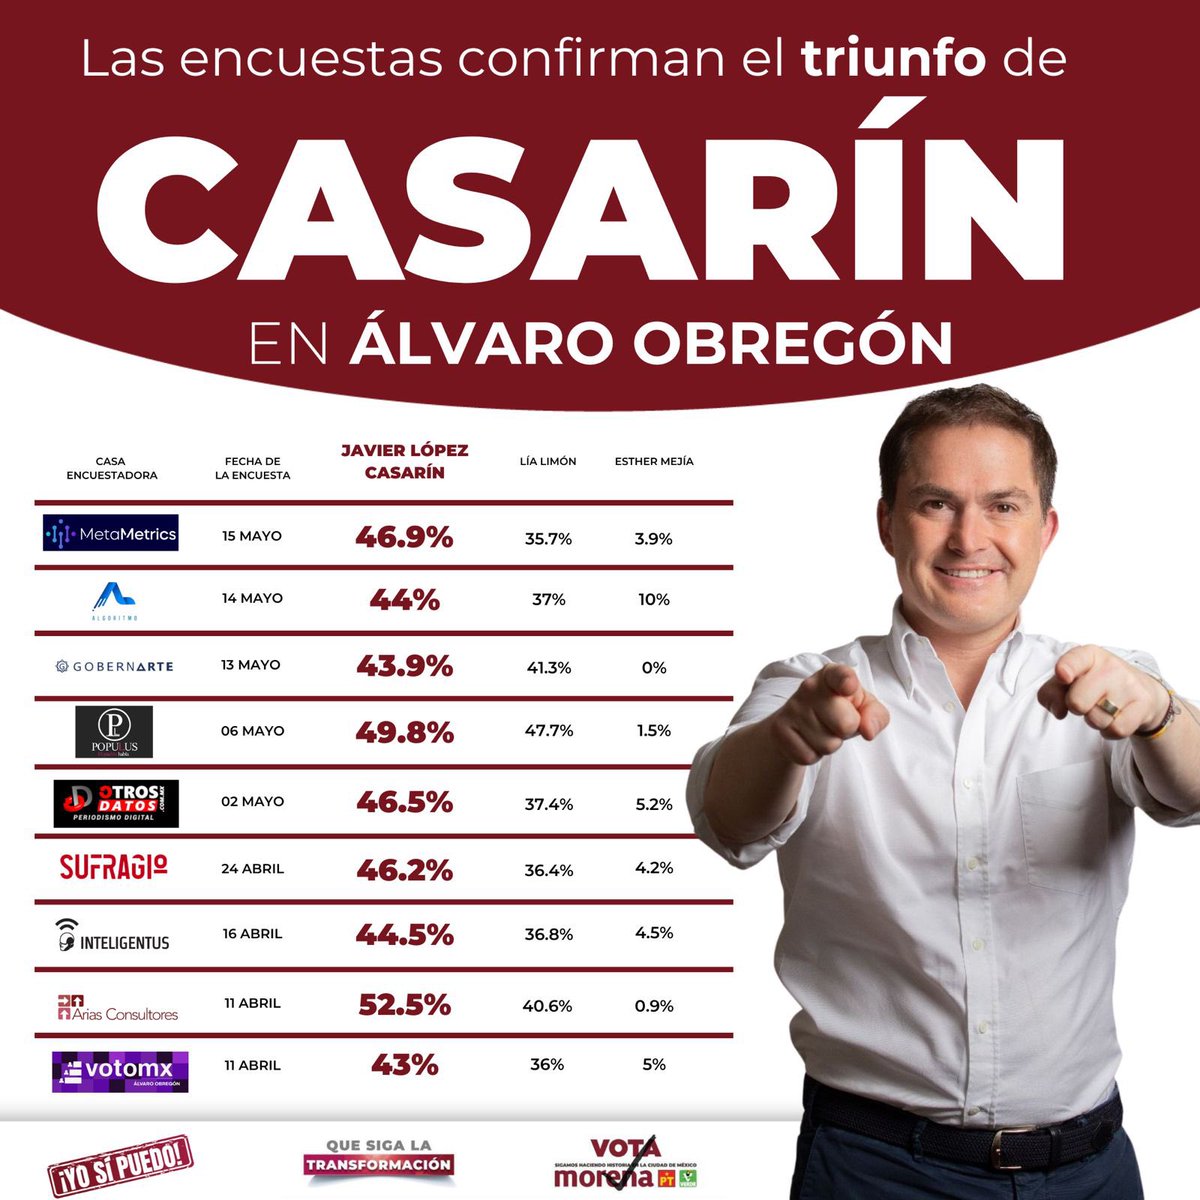 Que quede claro, los obregonenses ya decidieron y seré su próximo alcalde en #ÁlvaroObregón porque #YoSíPuedo establecer un gobierno con un futuro humanista. ¡No les voy a fallar! #VotaTodoMorena #ConCasarín #CasarínGana #AlvaroObregon #CasarínAlcalde